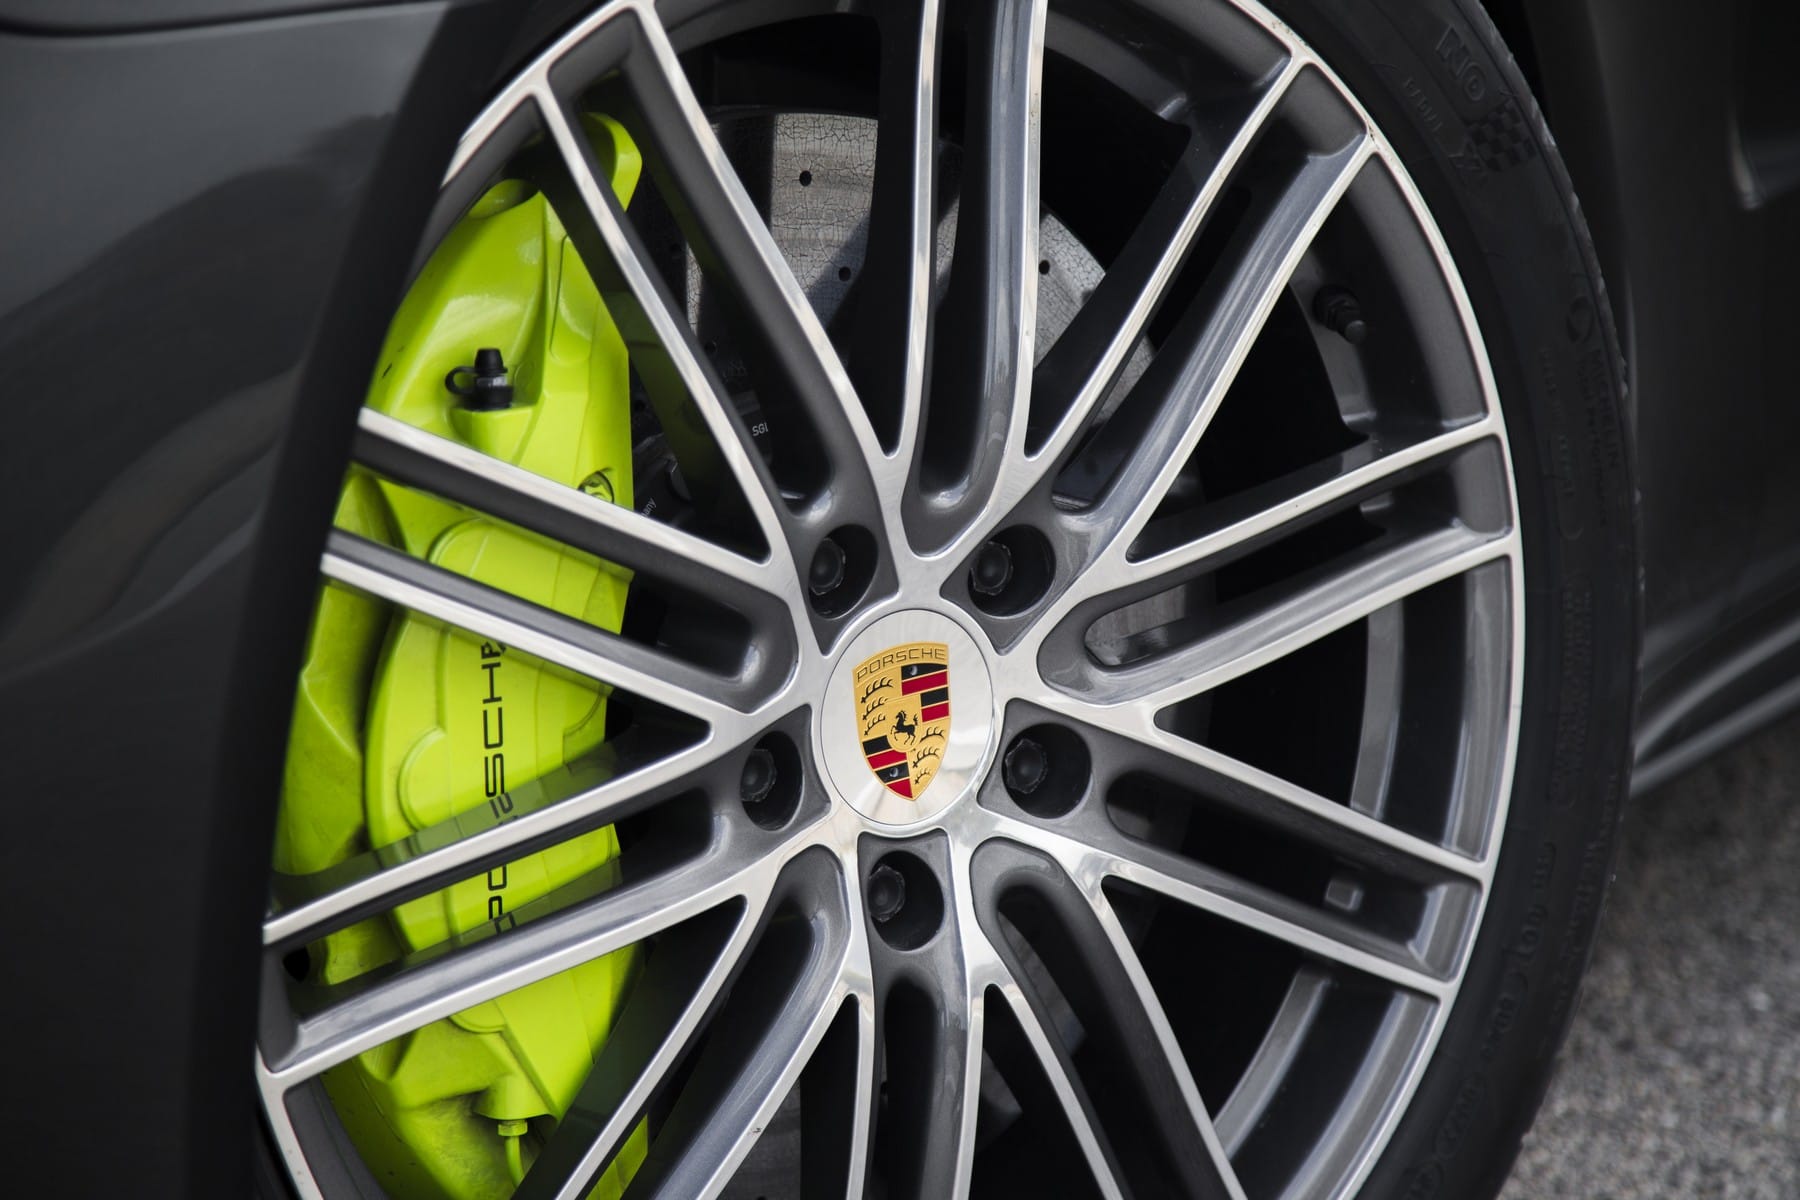 Die Bremsen sollen echtes Porsche-Feeling vermitteln.